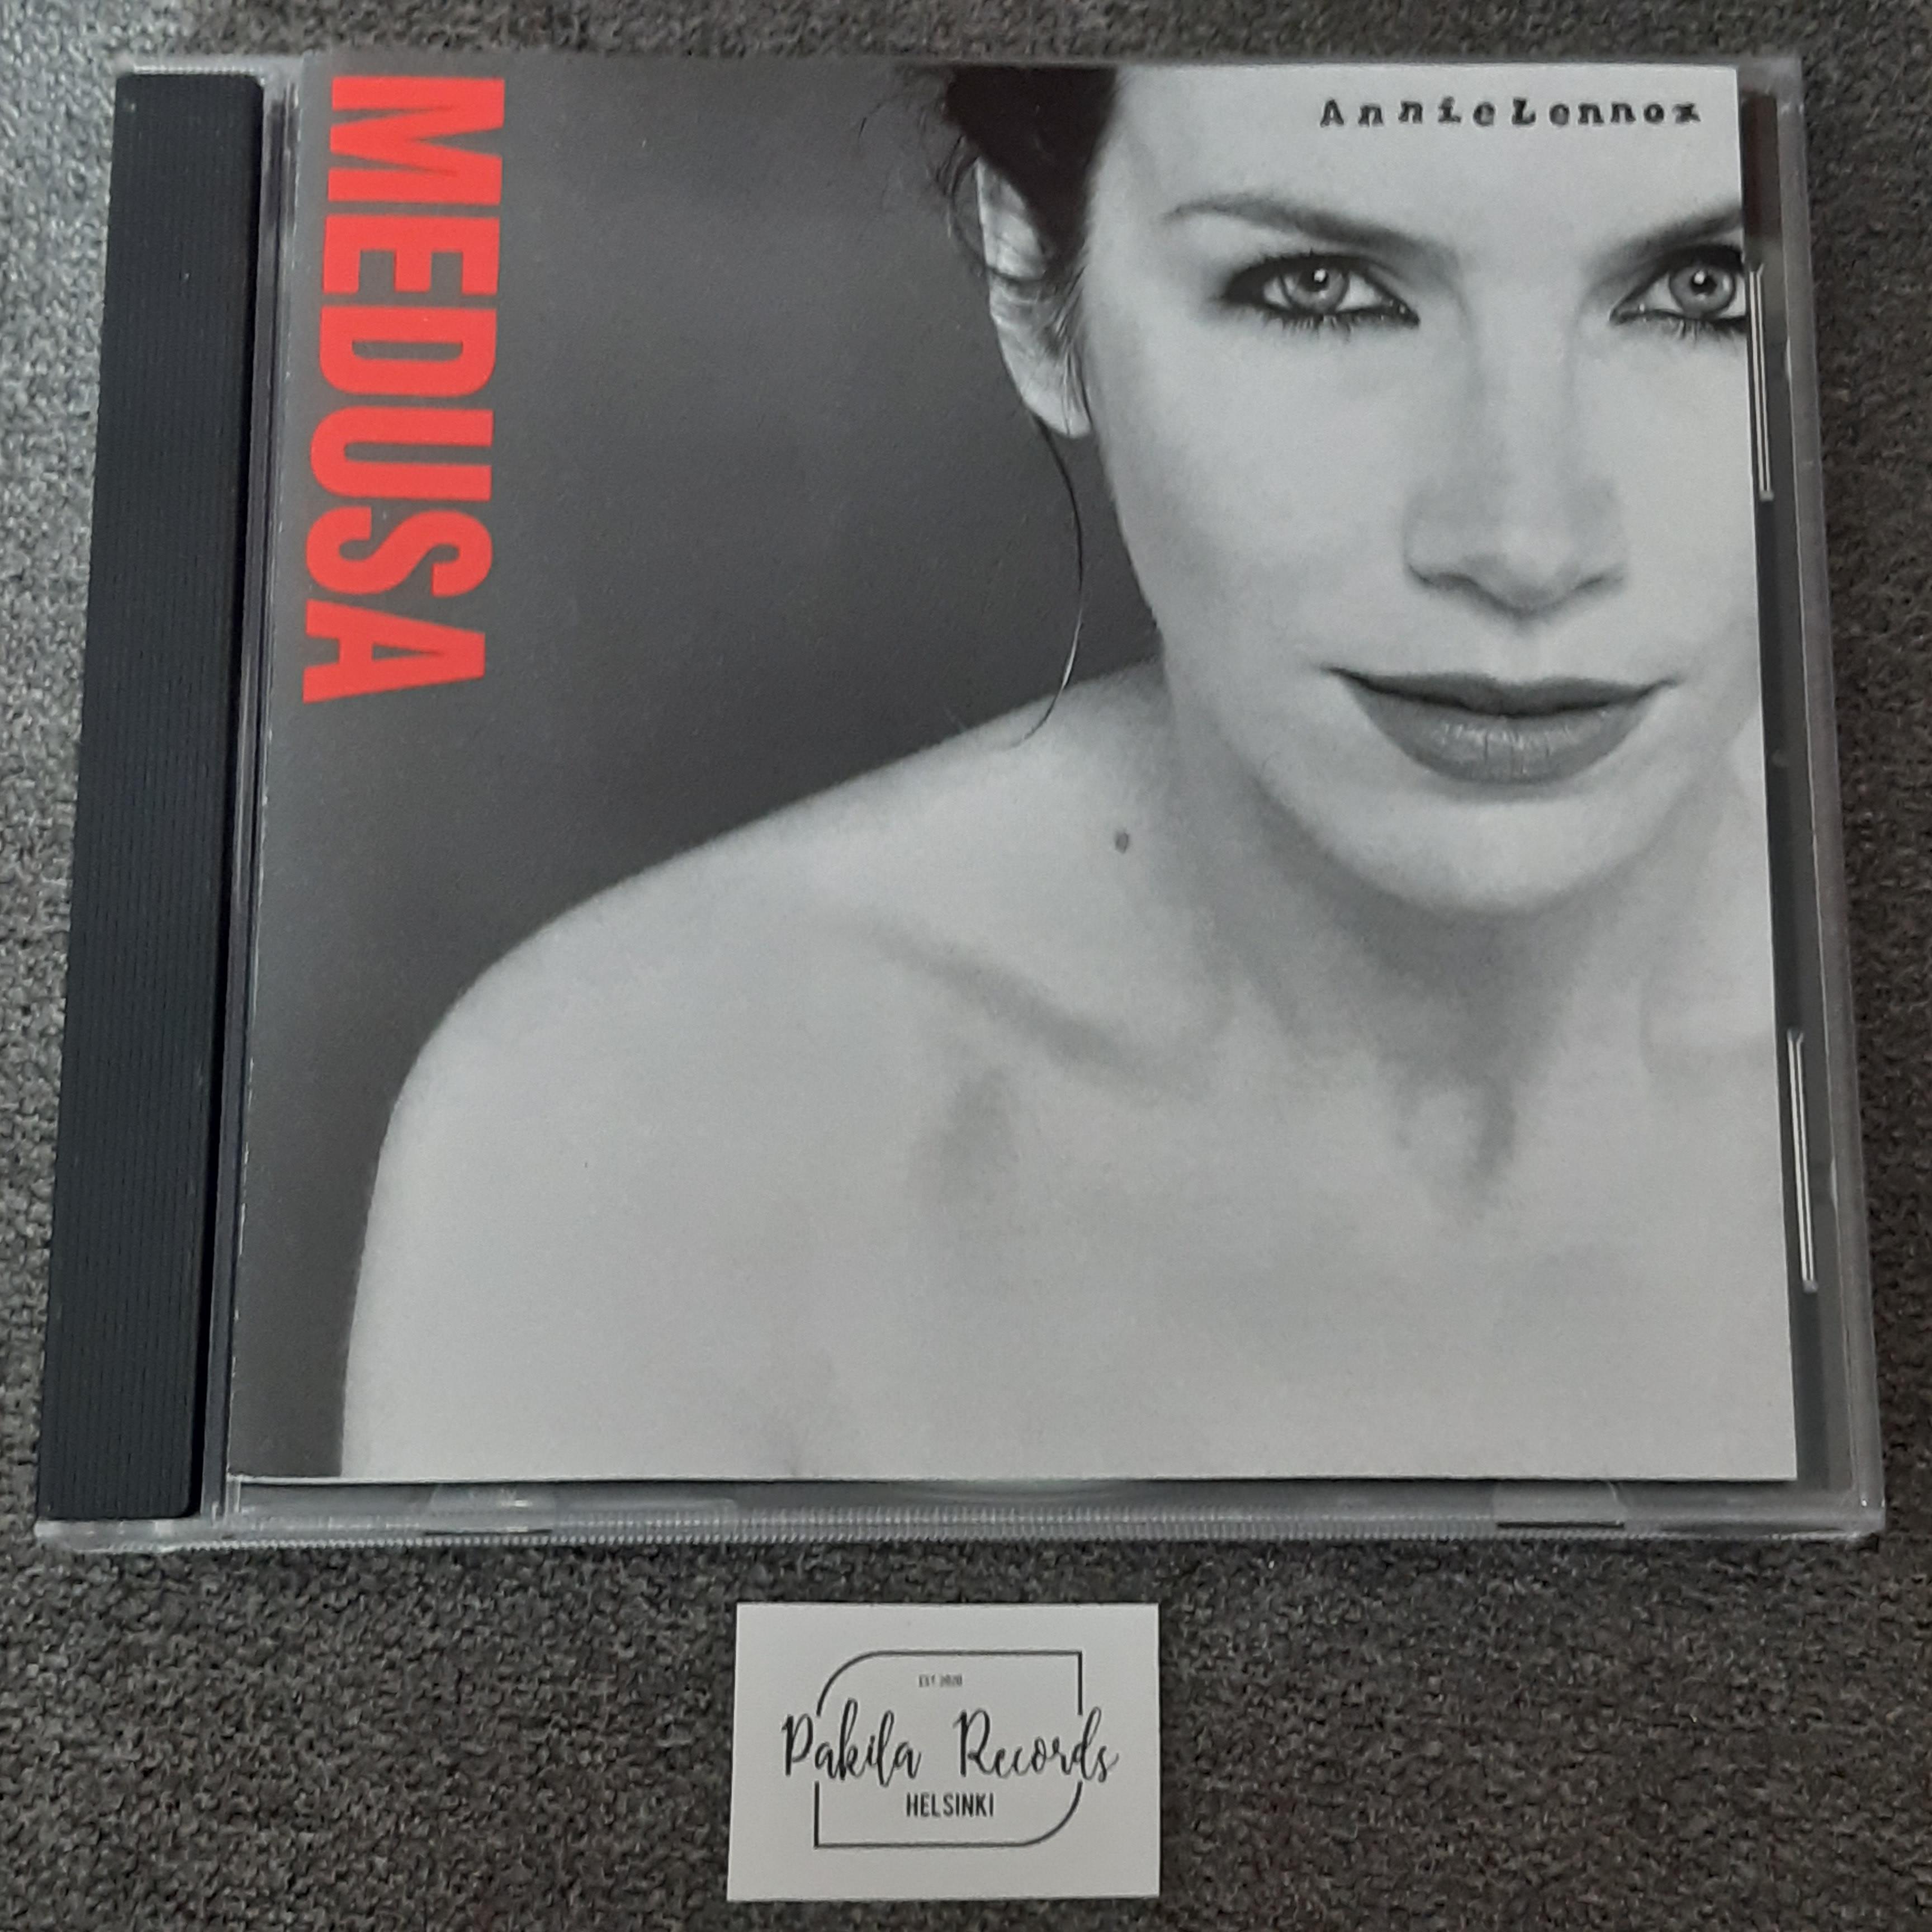 Annie Lennox - Medusa - CD (käytetty)